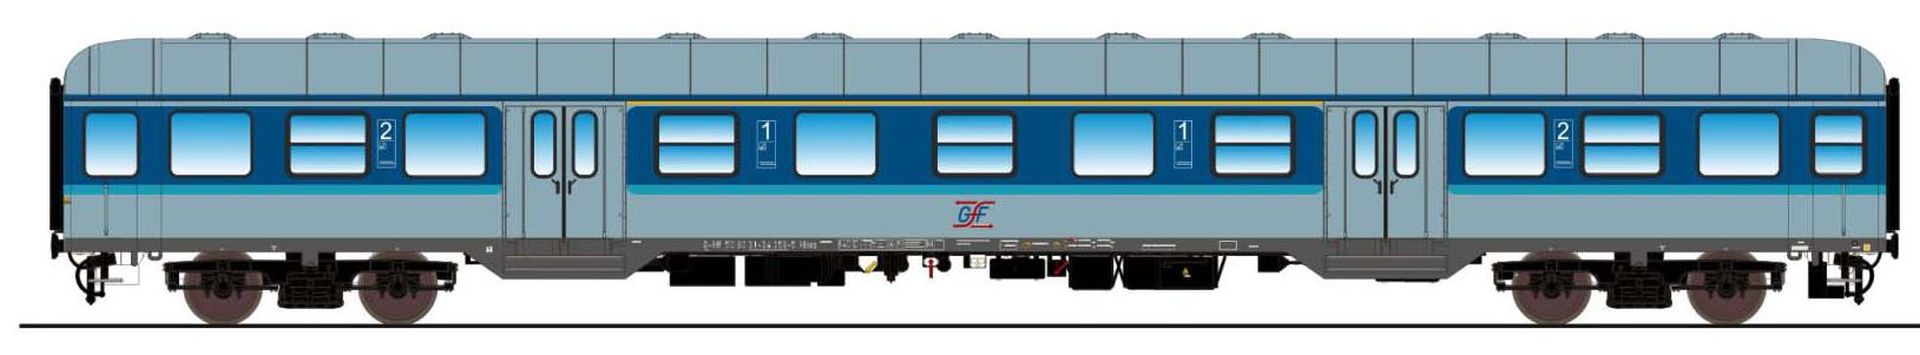 ESU 36069 - Personenwagen 'Silberling', AB nrz 418.4, 80 31-34 359-5, GfF, Ep.VI